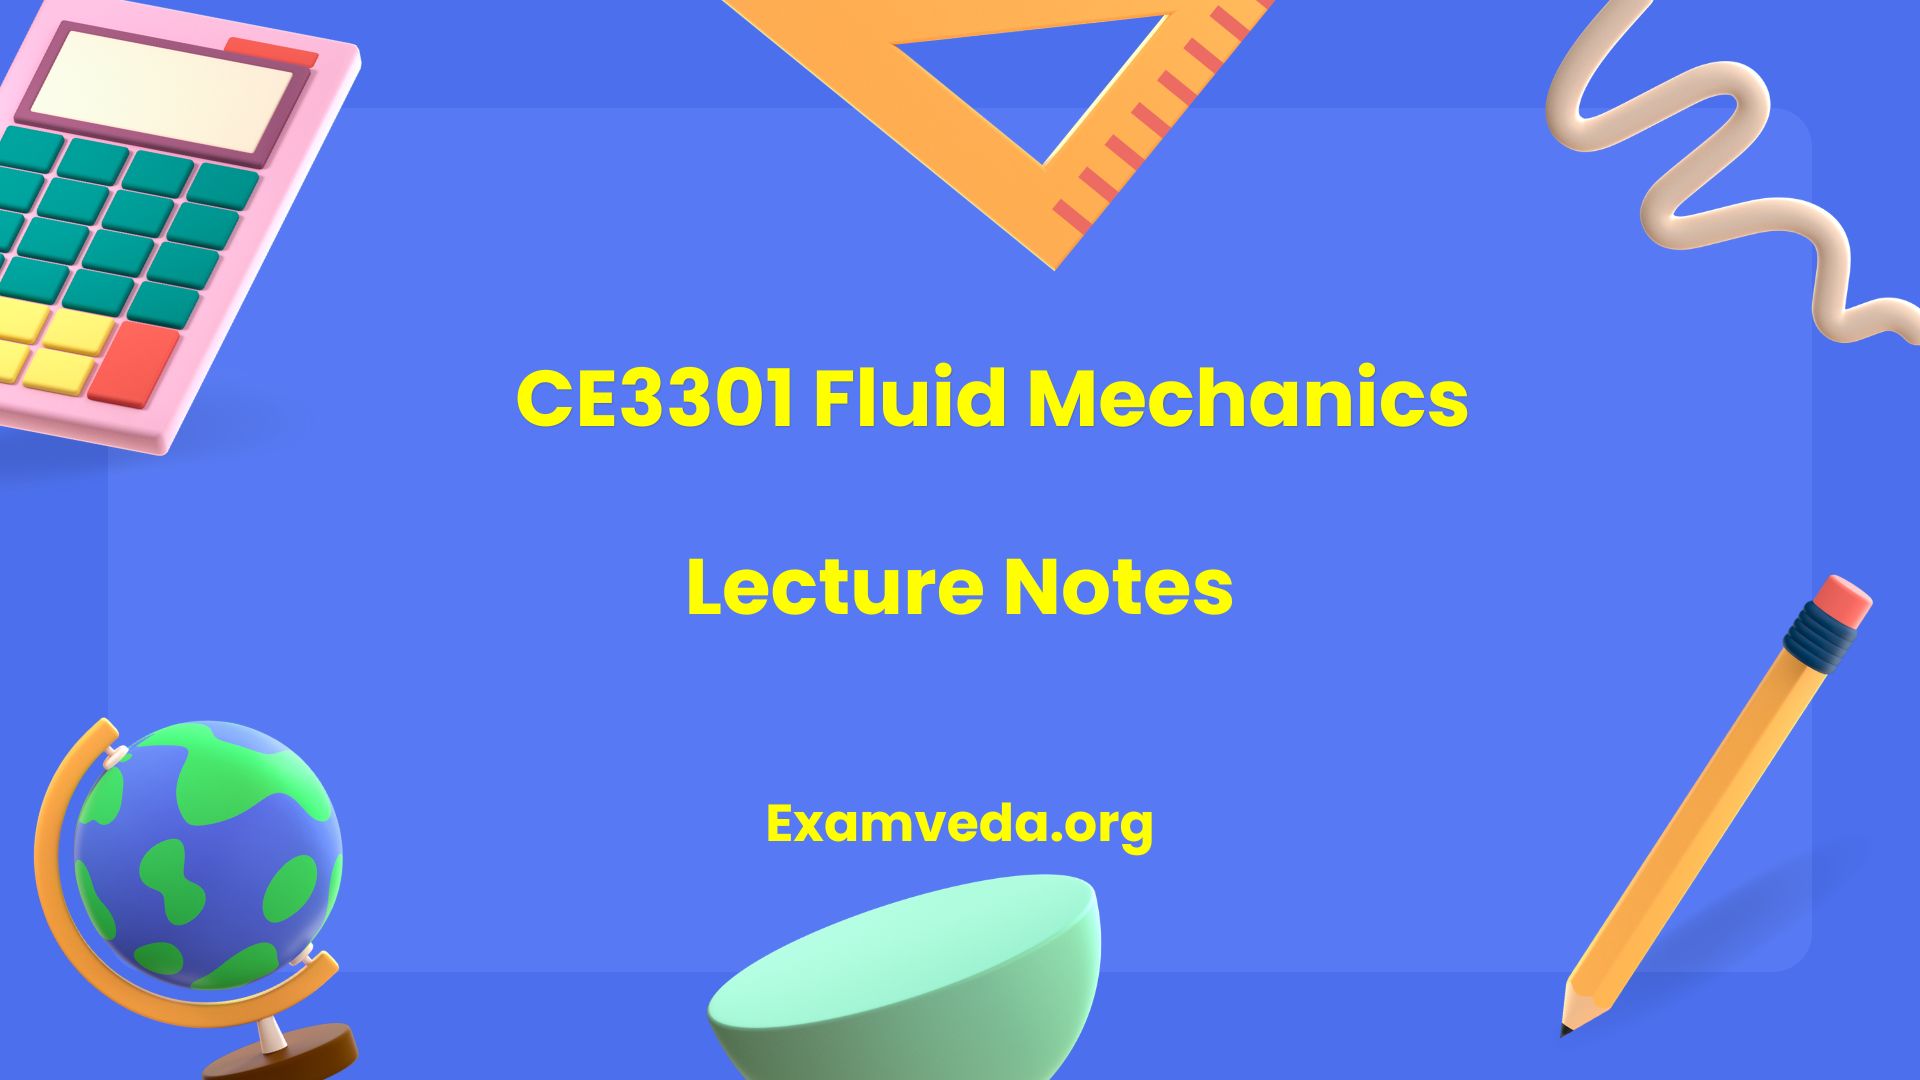 CE3301 Fluid Mechanics Lecture Notes